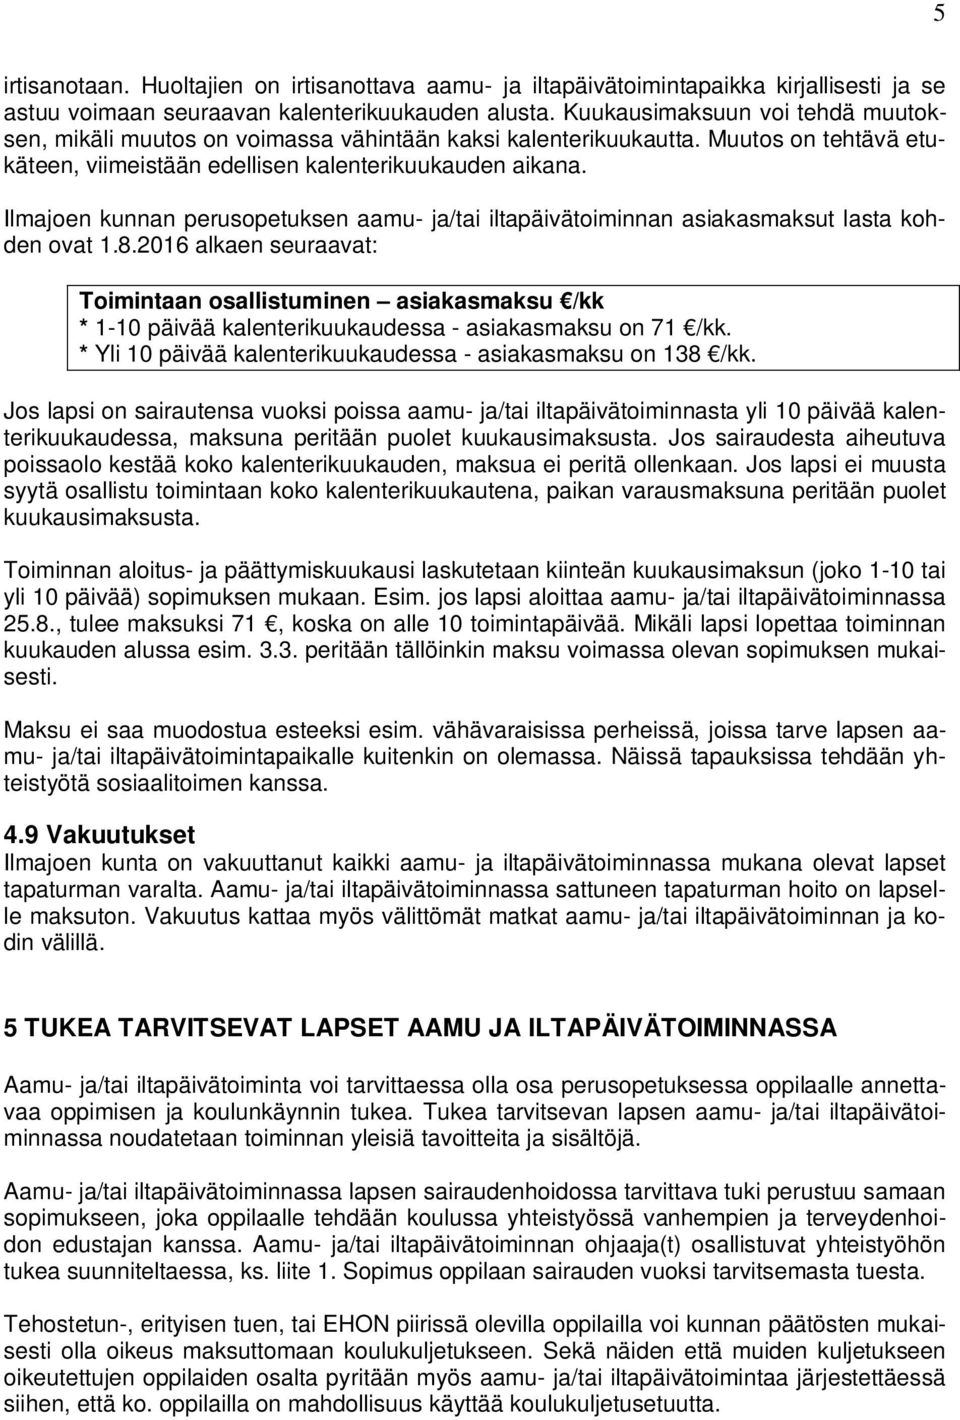 Ilmajoen kunnan perusopetuksen aamu- ja/tai iltapäivätoiminnan asiakasmaksut lasta kohden ovat 1.8.